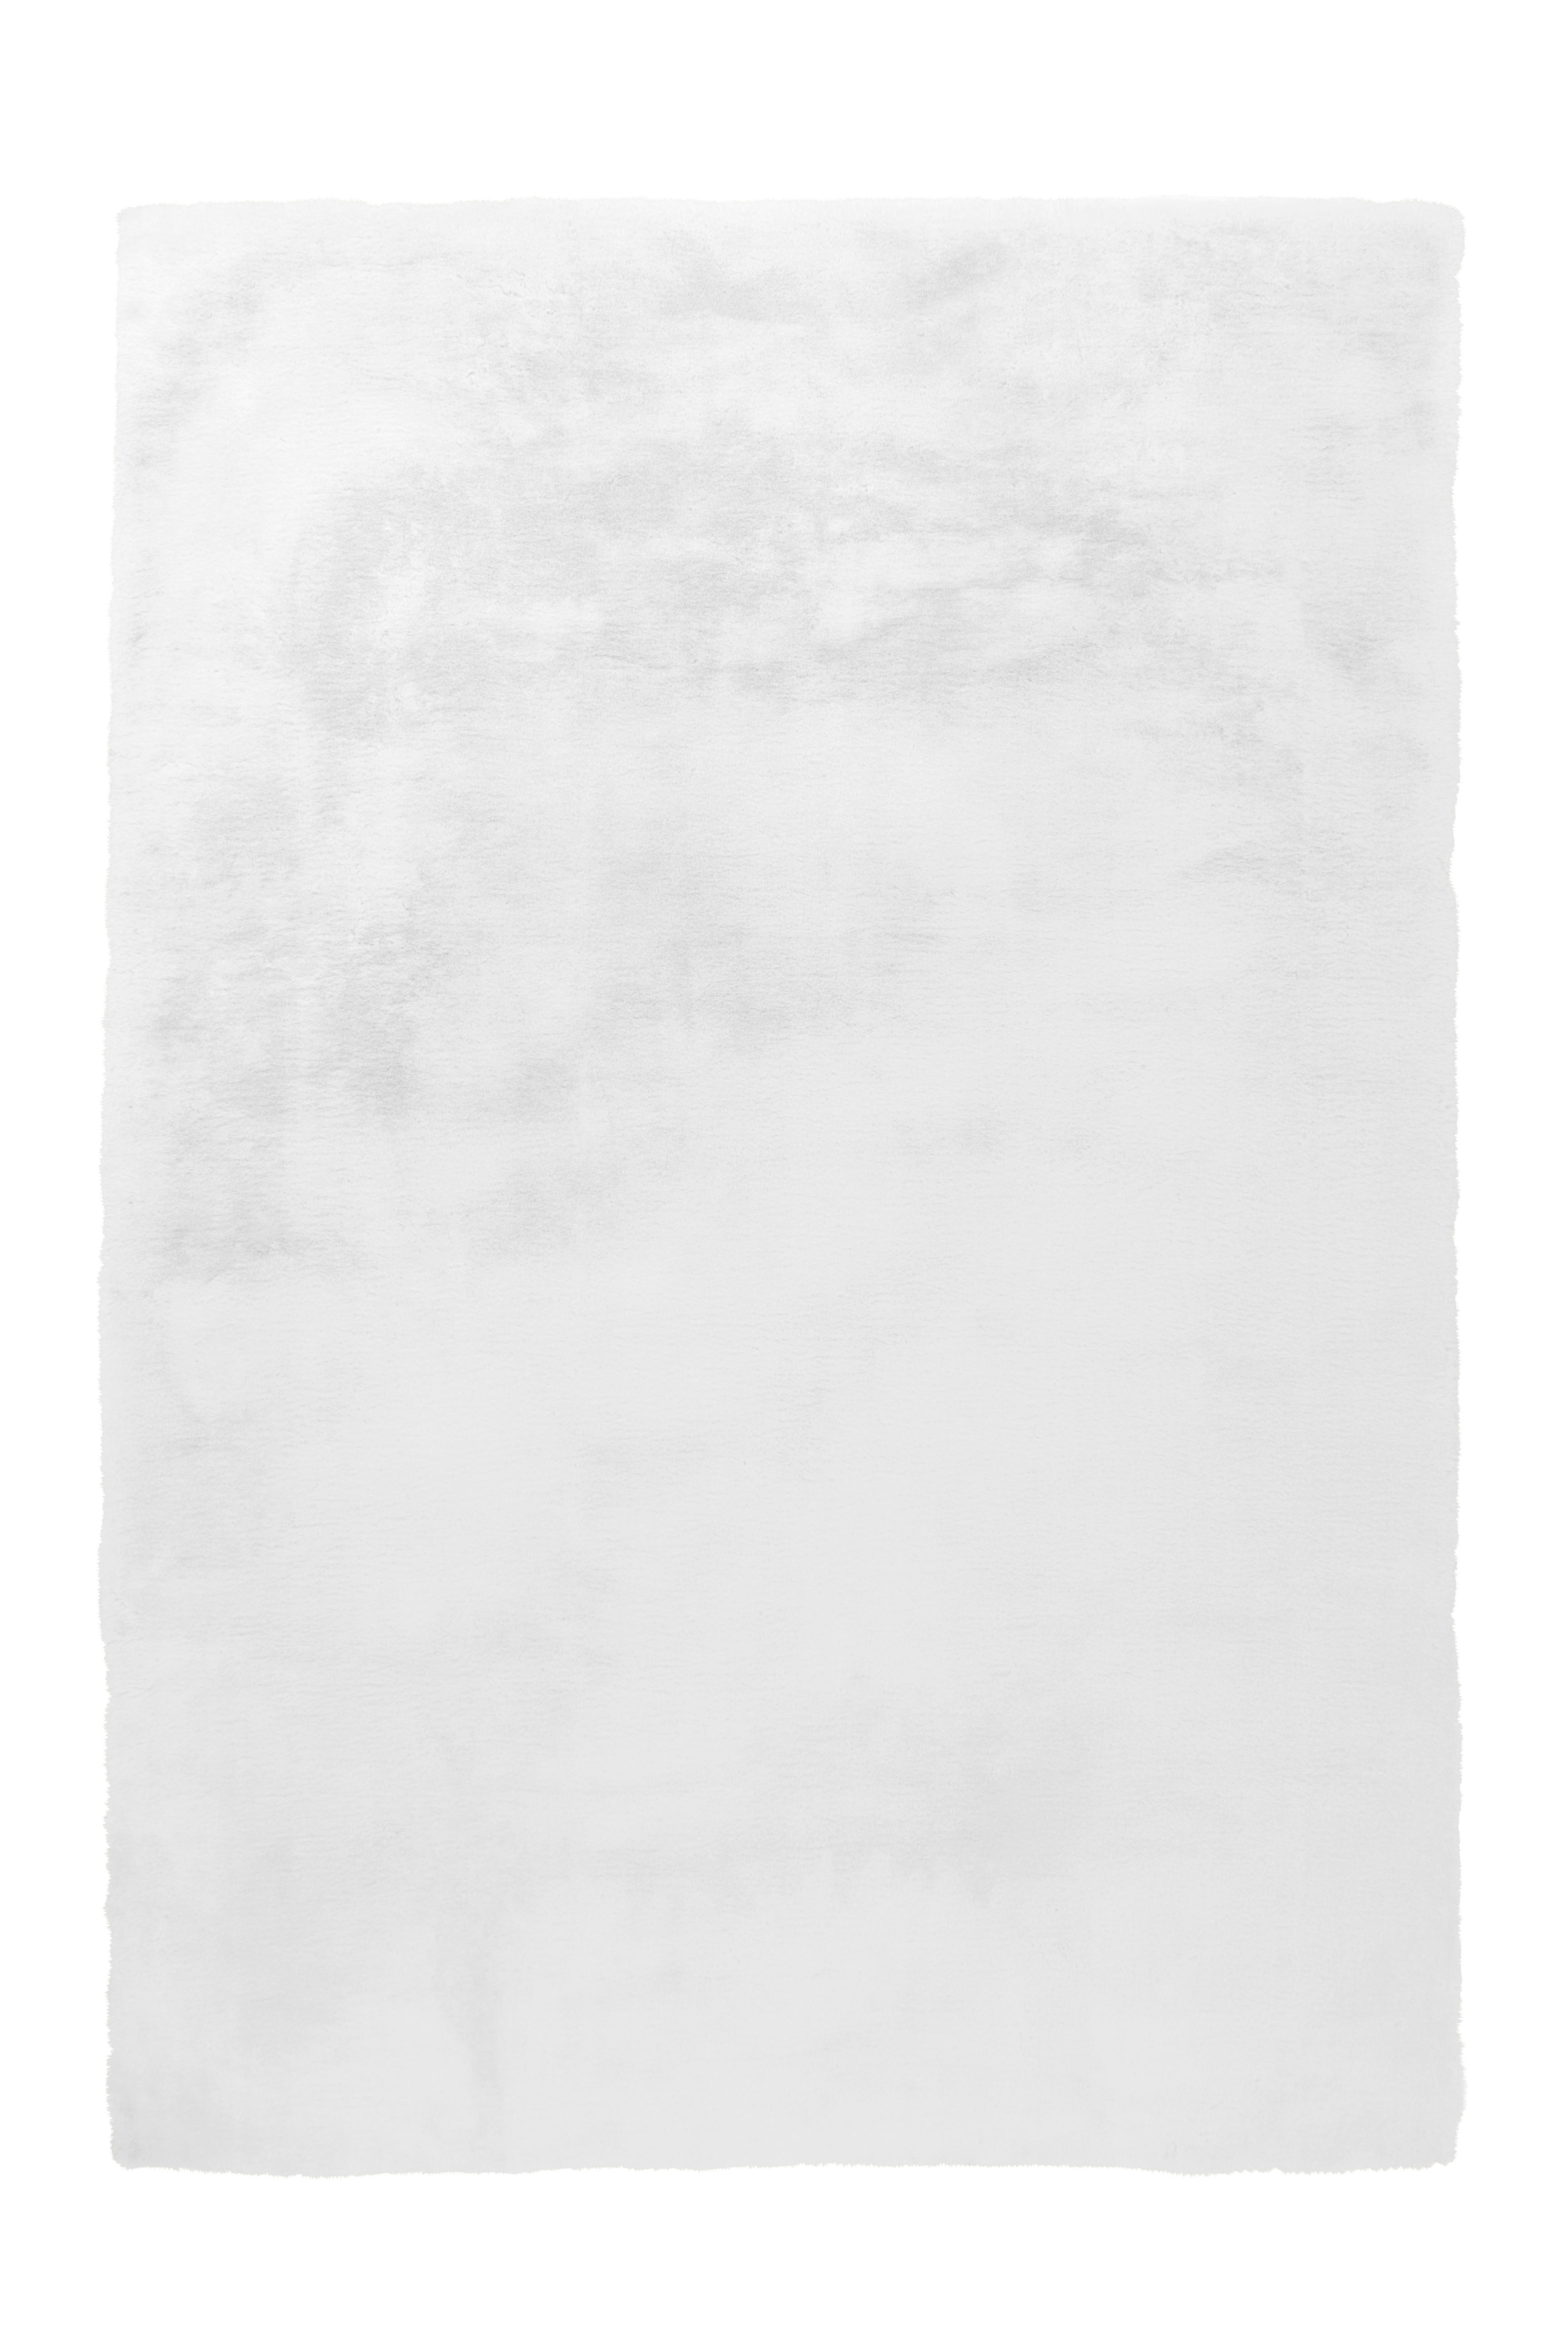 HOCHFLORTEPPICH 80/150 cm Rabbit  - Weiß, Trend, Textil (80/150cm)